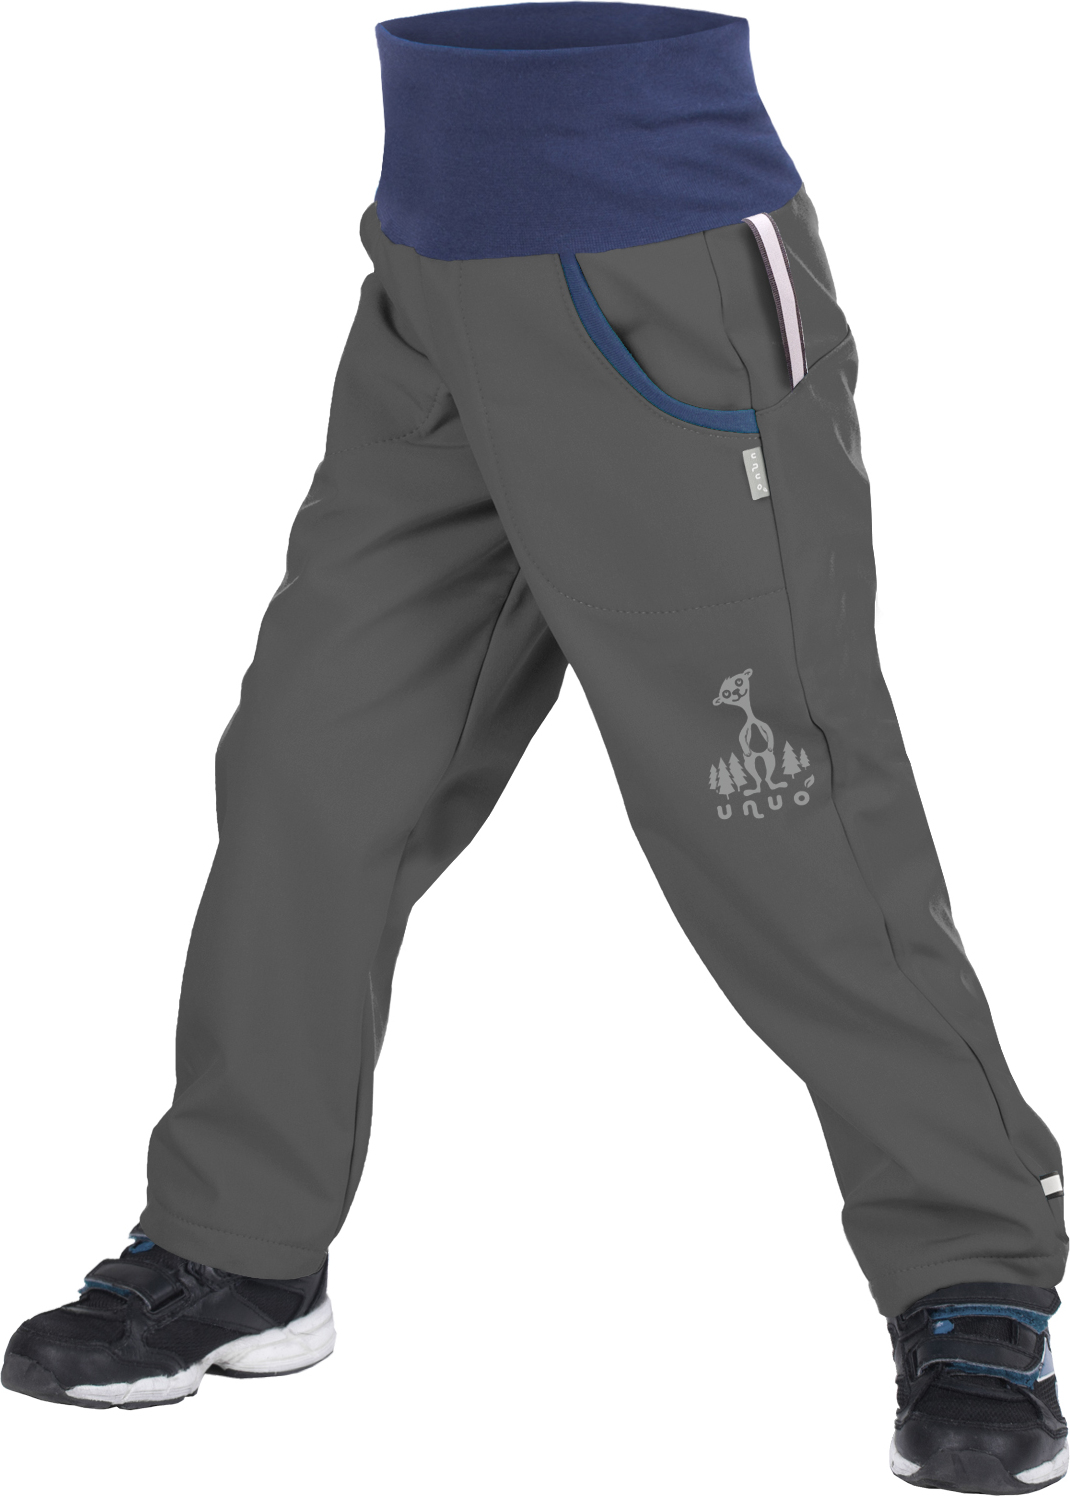 Dětské softshellové kalhoty UNUO s fleecem Antracitové + reflexní obrázek Evžen (Softshell kids trousers) Velikost: 104/110